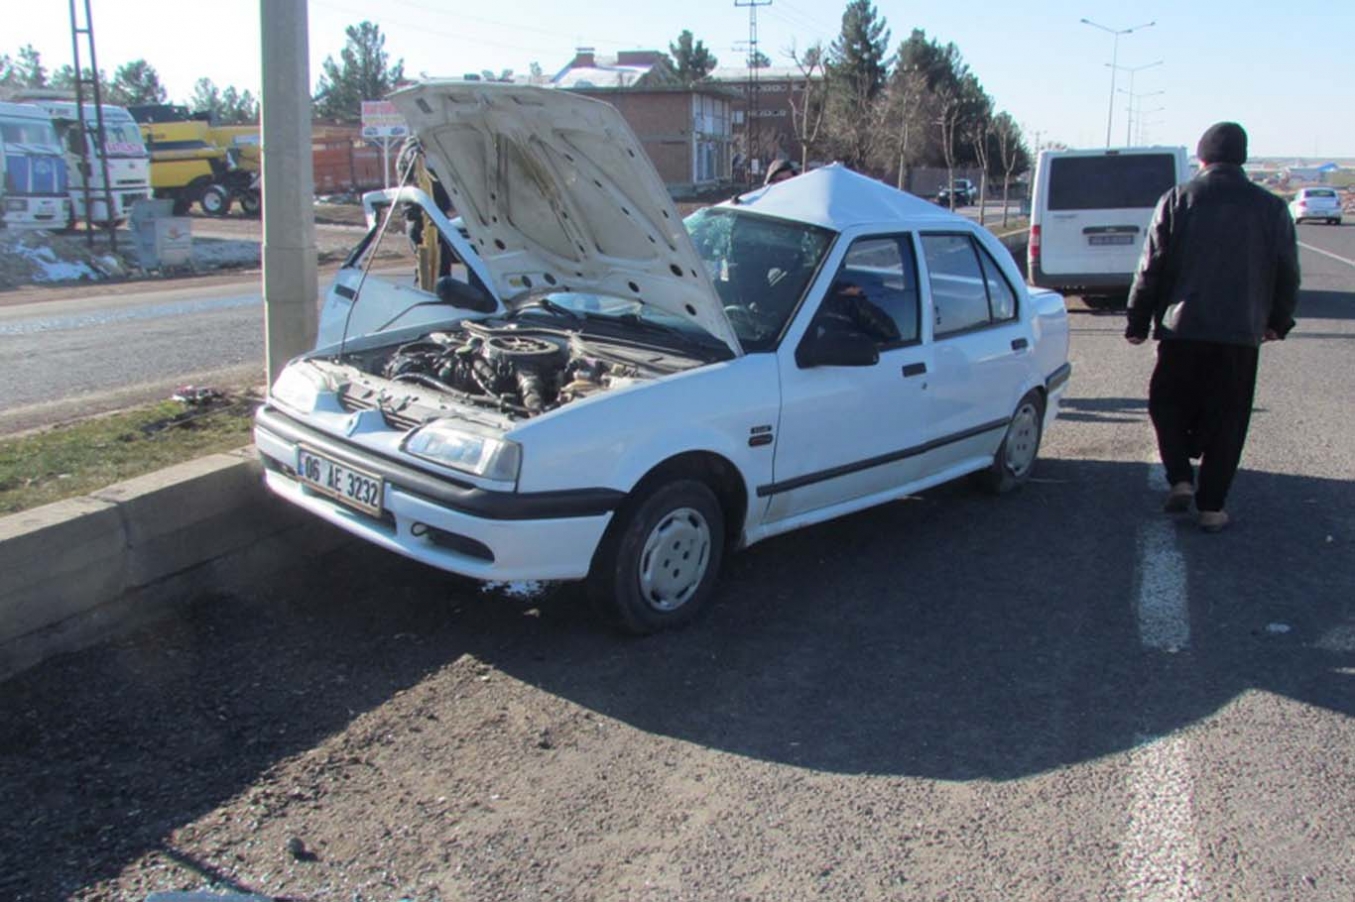 Siverek’te trafik kazası: 3 yaralı